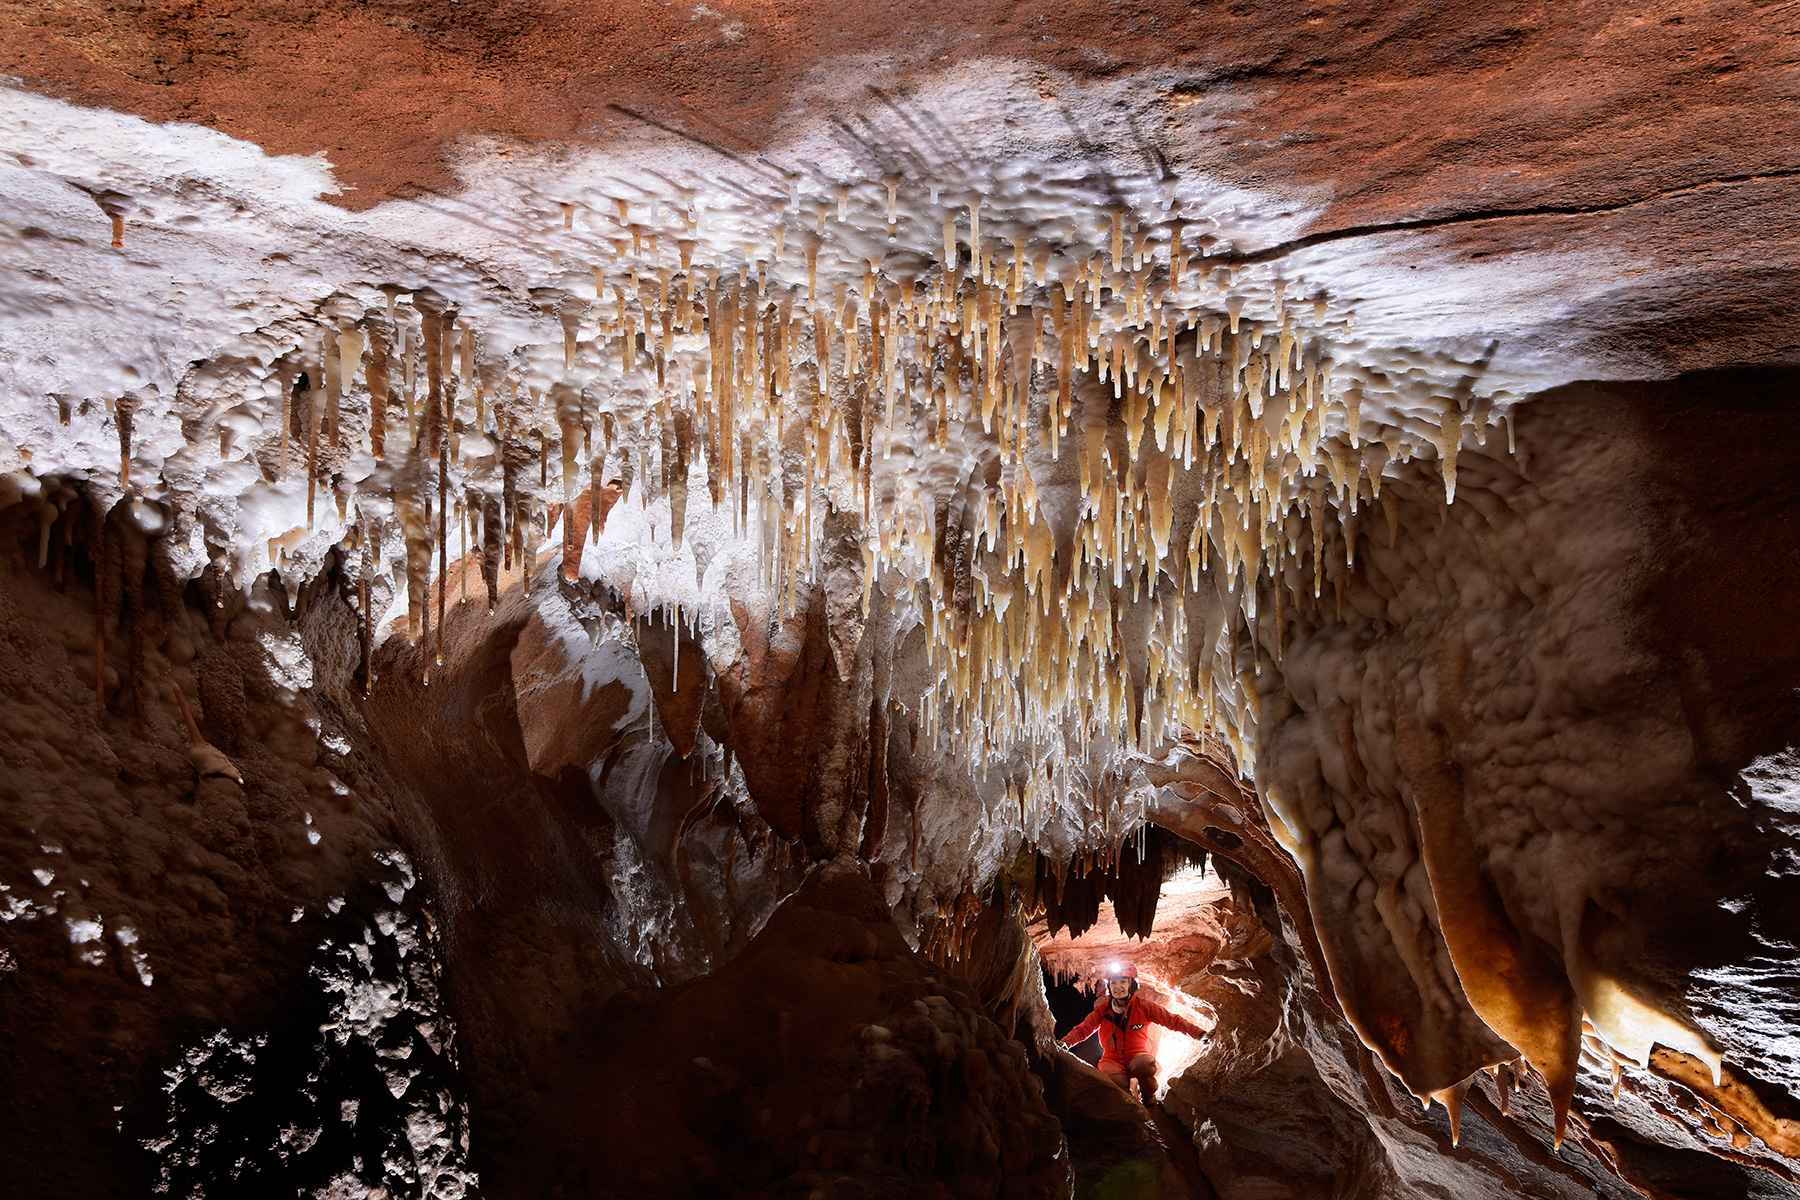 Henning Cave (Jenolan Karst Conservation Reserve, Australie) - Groupe de stalactites au plafond d'une galerie avec spéléo en fond